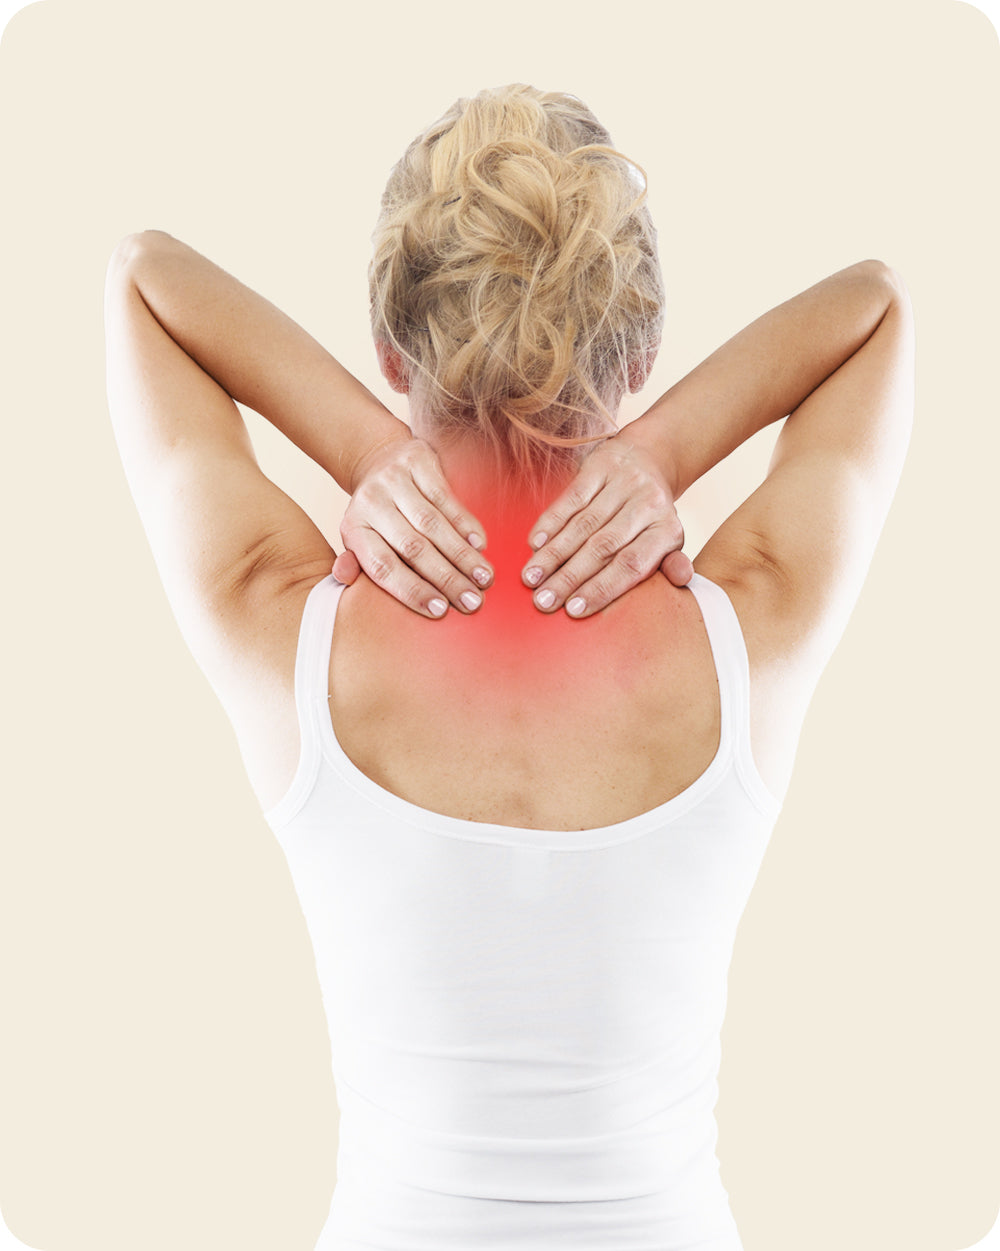 Linderung der Nackenschmerzen mit dem Basic Jade Massagegerät